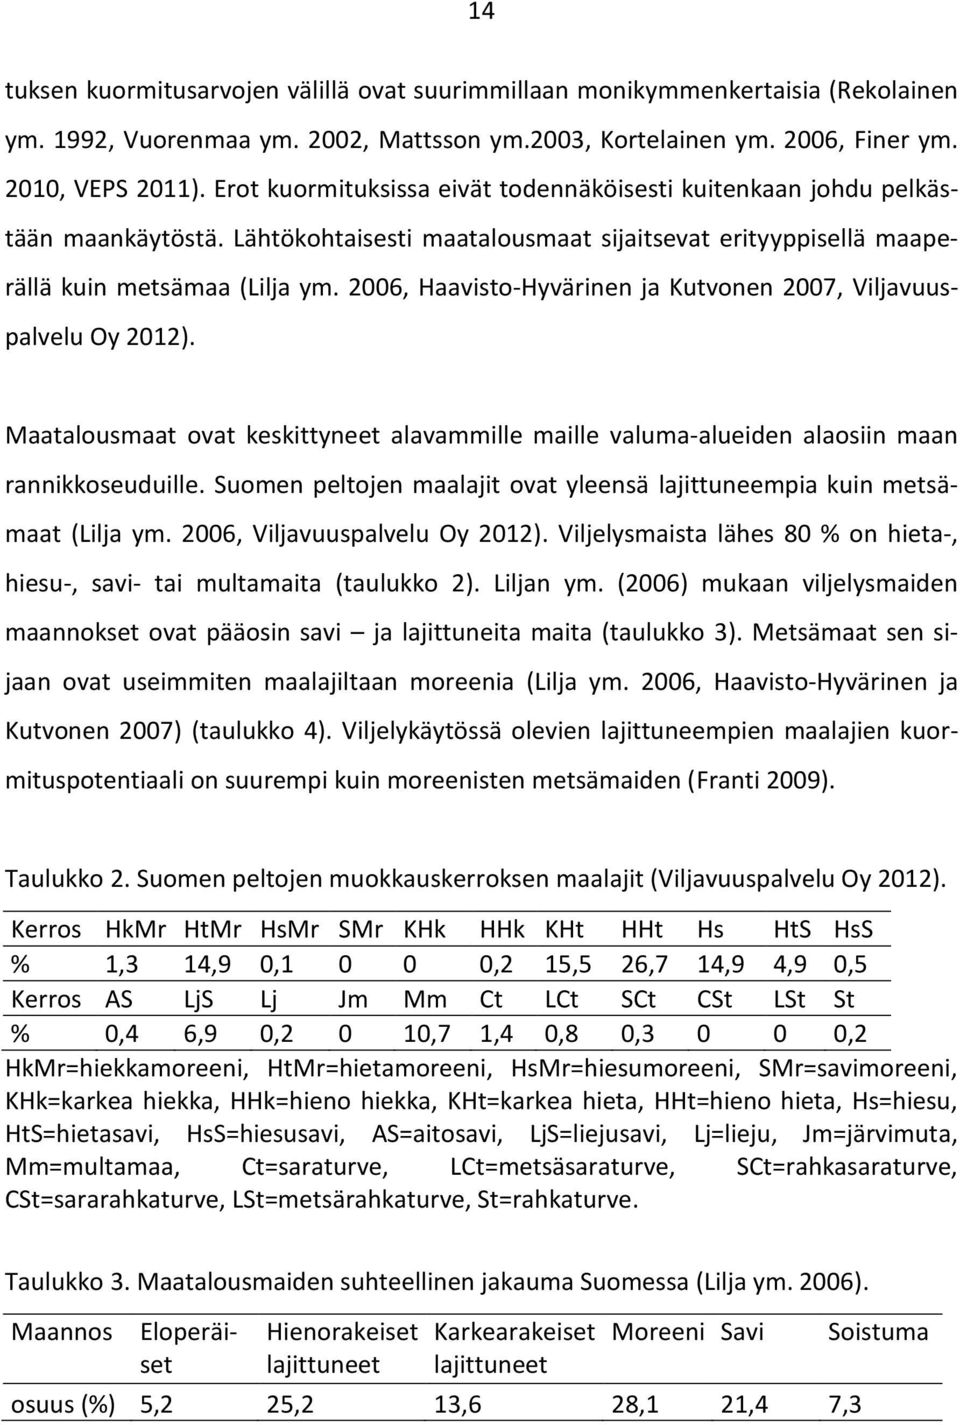 2006, Haavisto-Hyvärinen ja Kutvonen 2007, Viljavuuspalvelu Oy 2012). Maatalousmaat ovat keskittyneet alavammille maille valuma-alueiden alaosiin maan rannikkoseuduille.